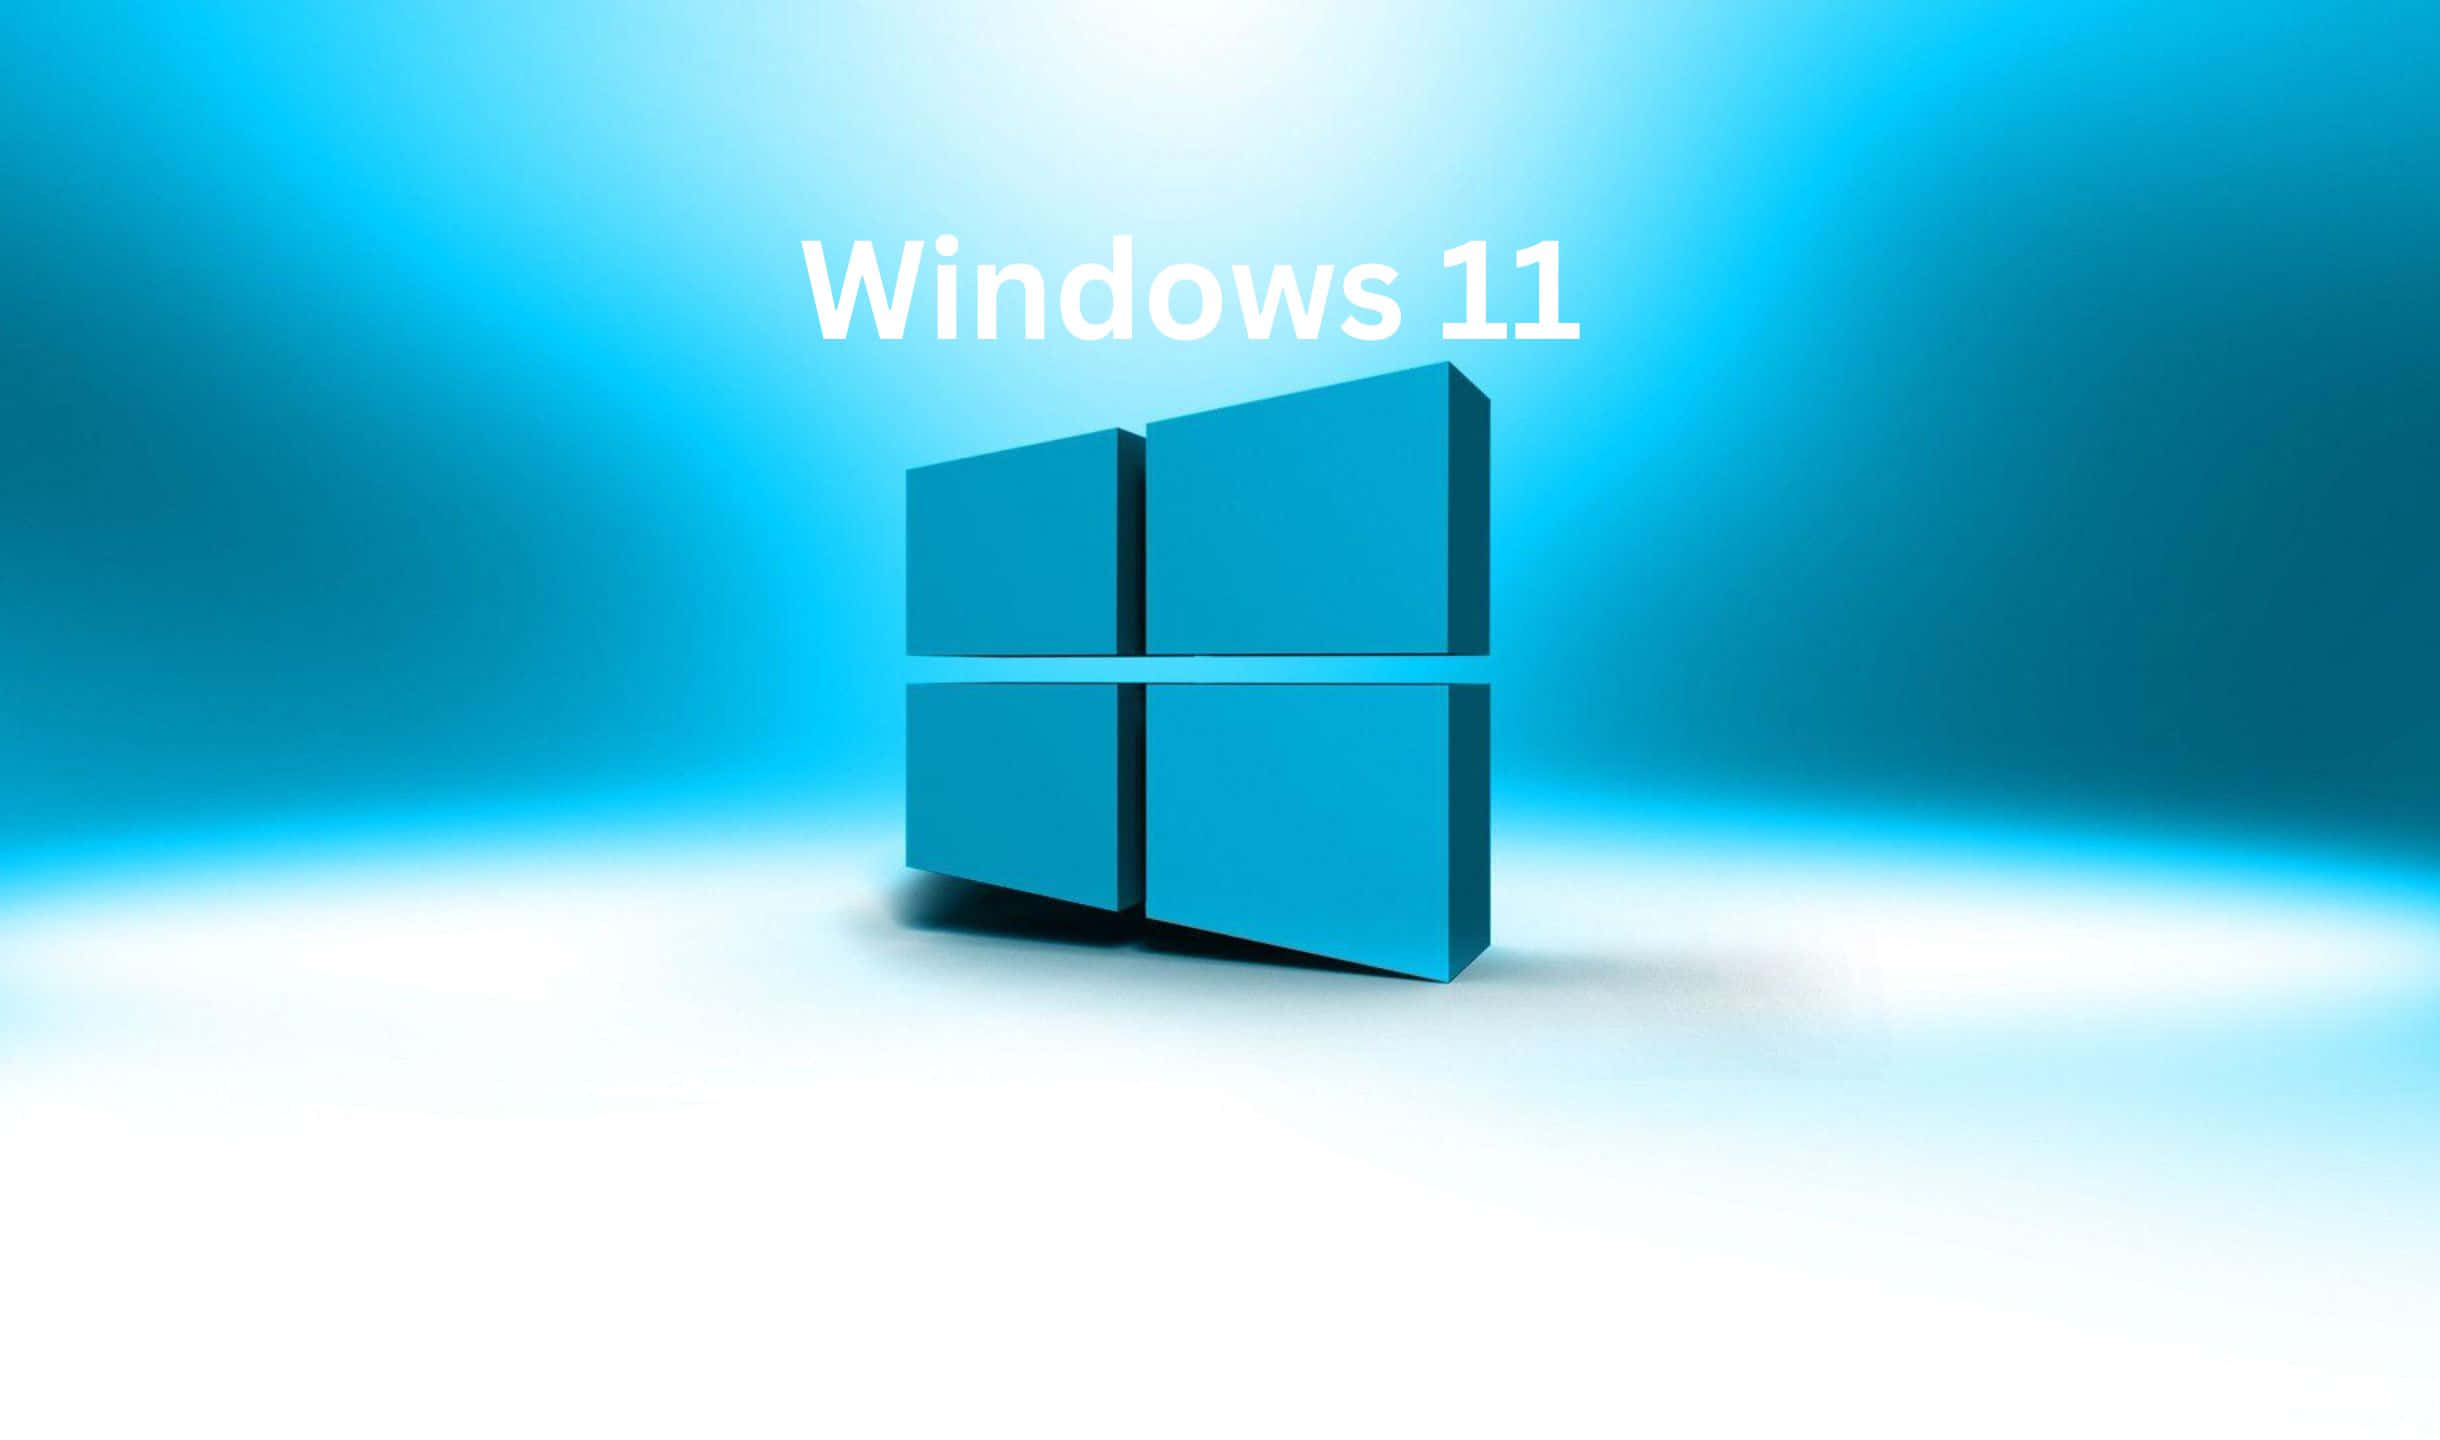 Windows10-logo På En Blå Baggrund.